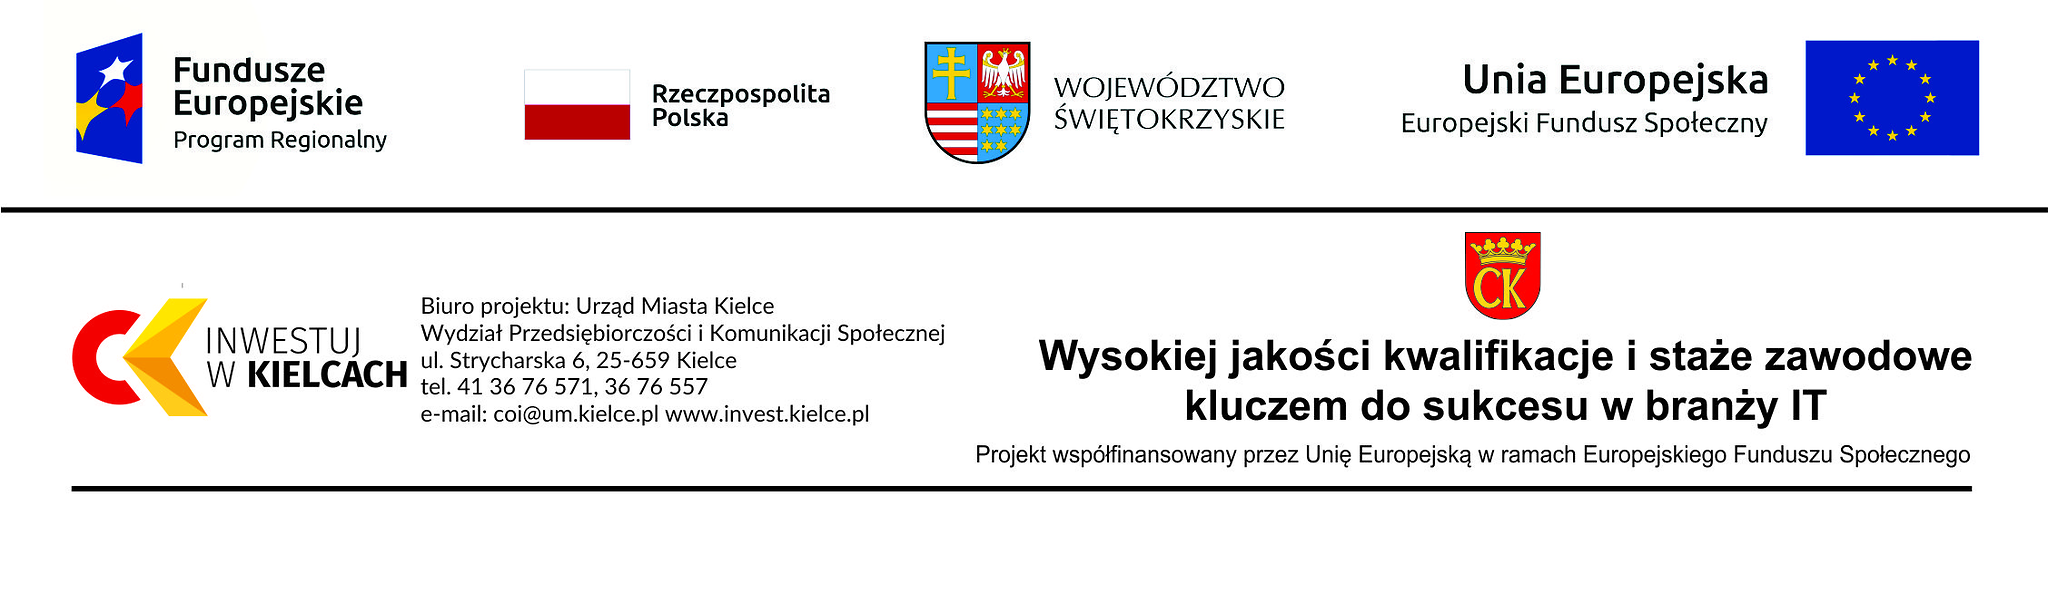 Logotypy Inwestuj w Kielcach.png